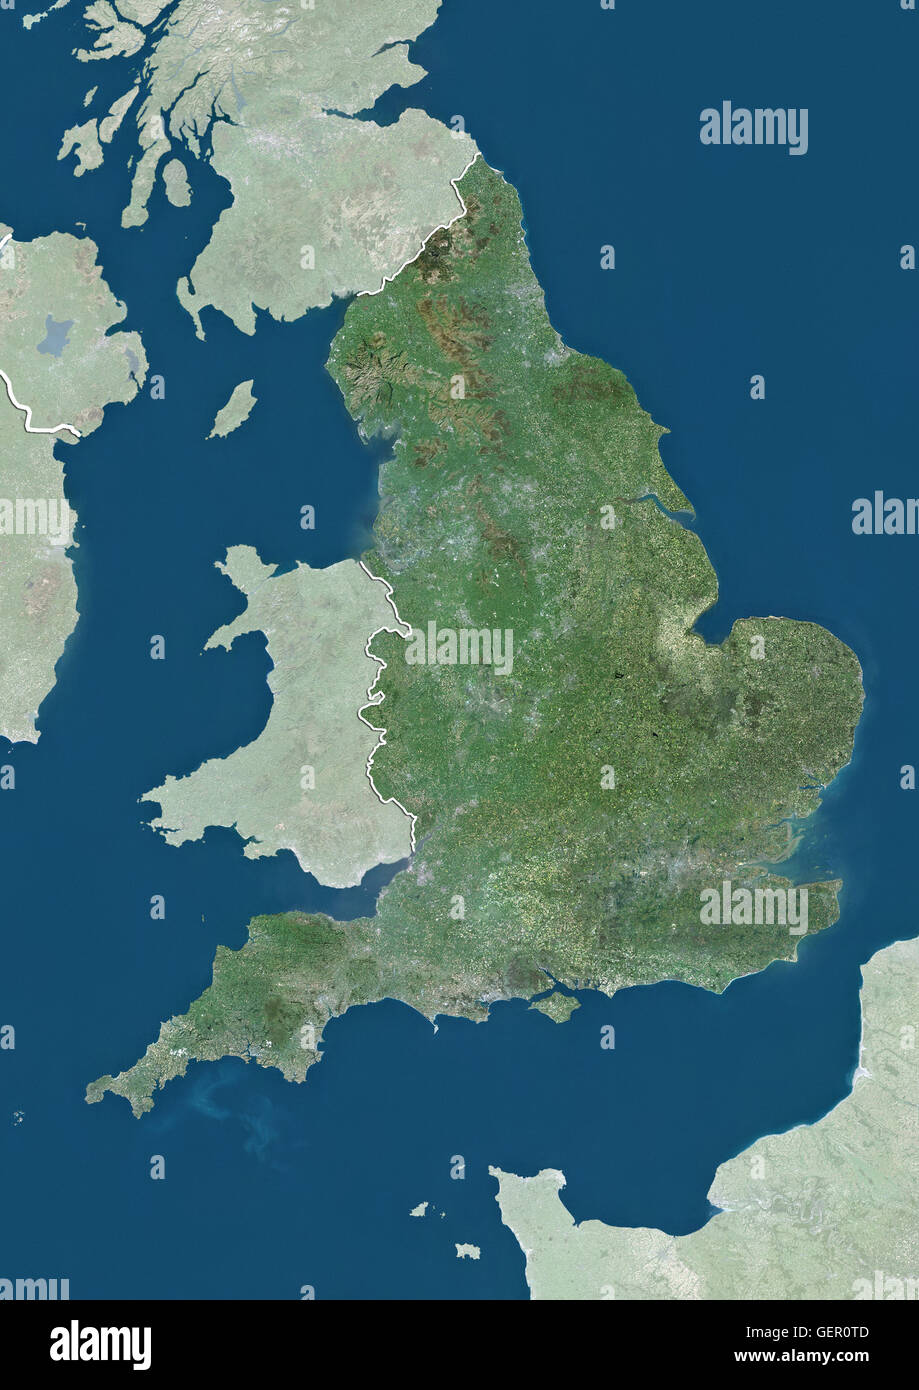 Vista satellitare del Regno Unito (con confini tra paesi e maschera). Questa immagine è stata elaborata sulla base dei dati acquisiti dai satelliti Landsat. Foto Stock